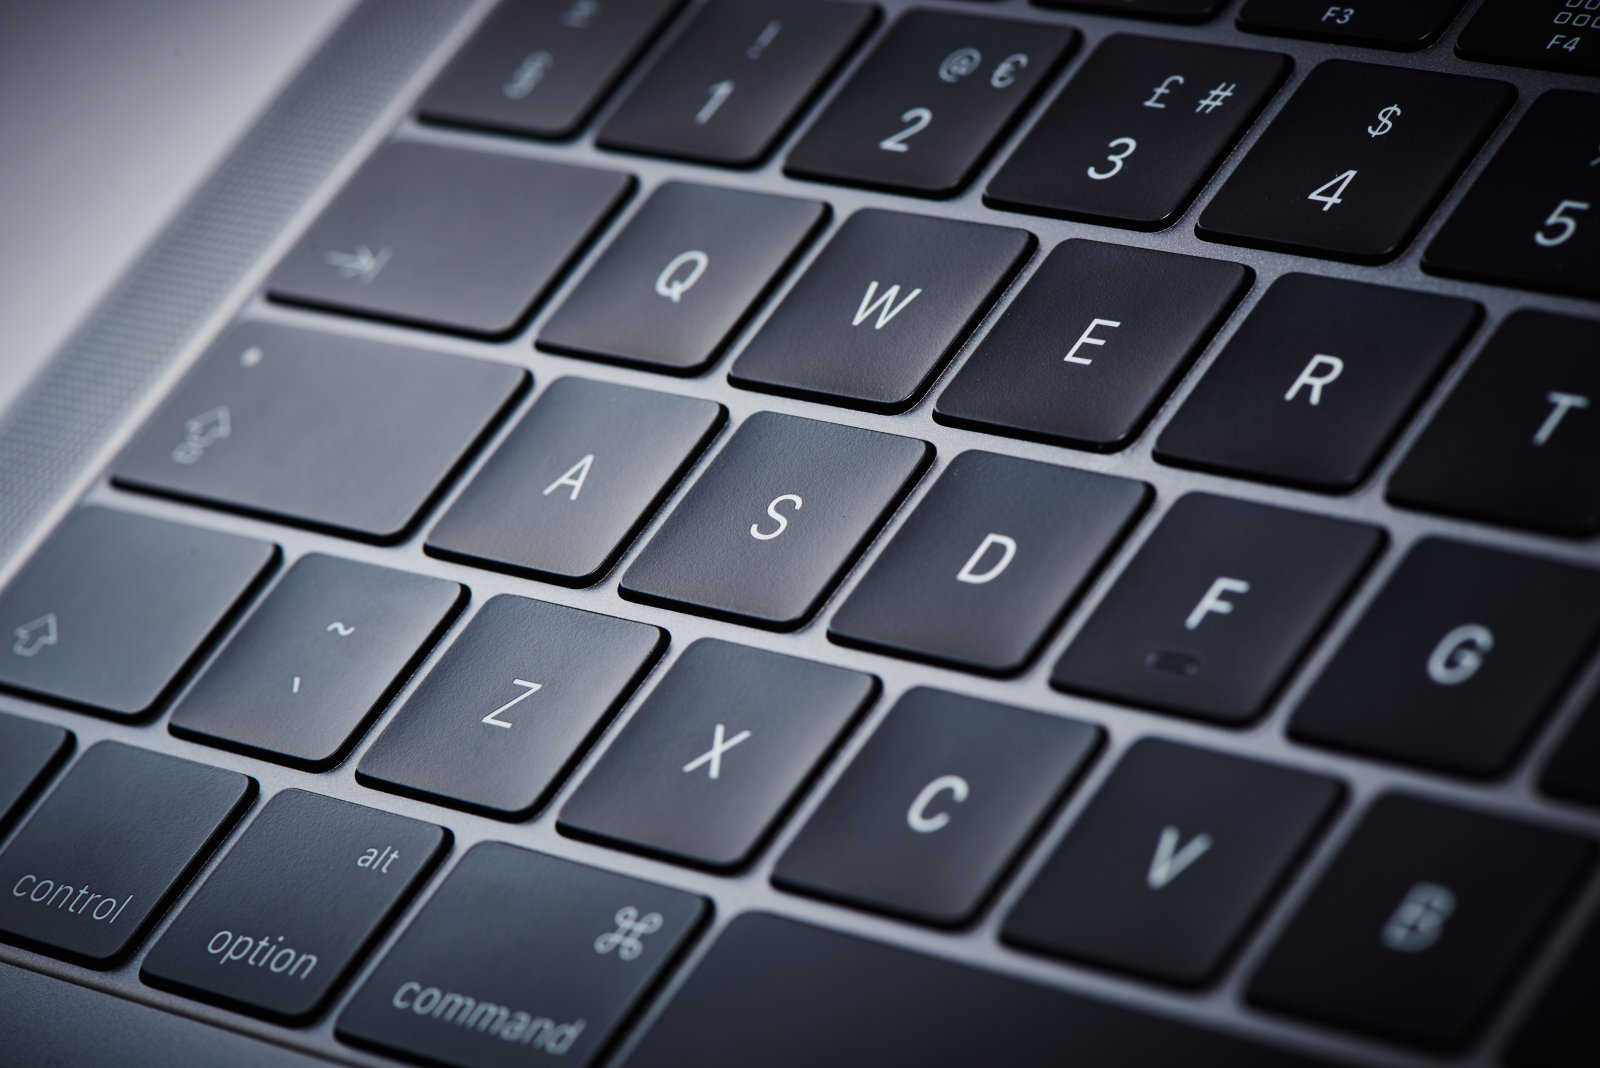 Macbook Pro 2018のキーボードに粉塵をまぶすとどうなる Ifixitがテスト Engadget 日本版